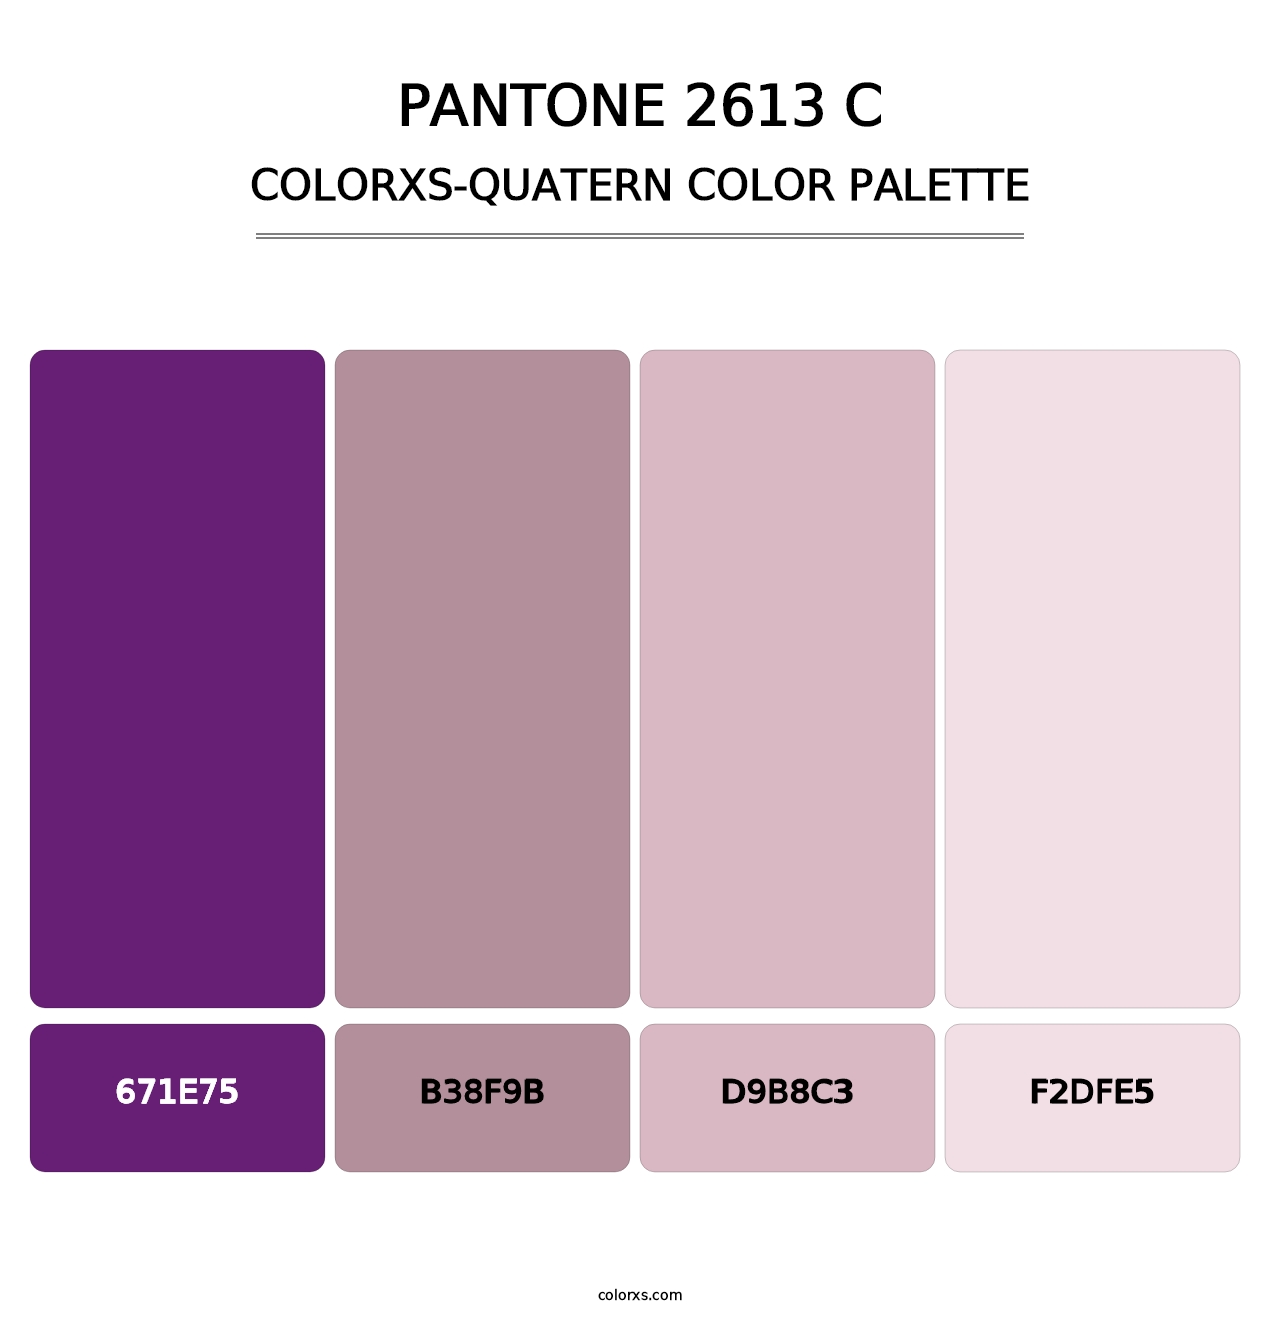 PANTONE 2613 C - Colorxs Quatern Palette